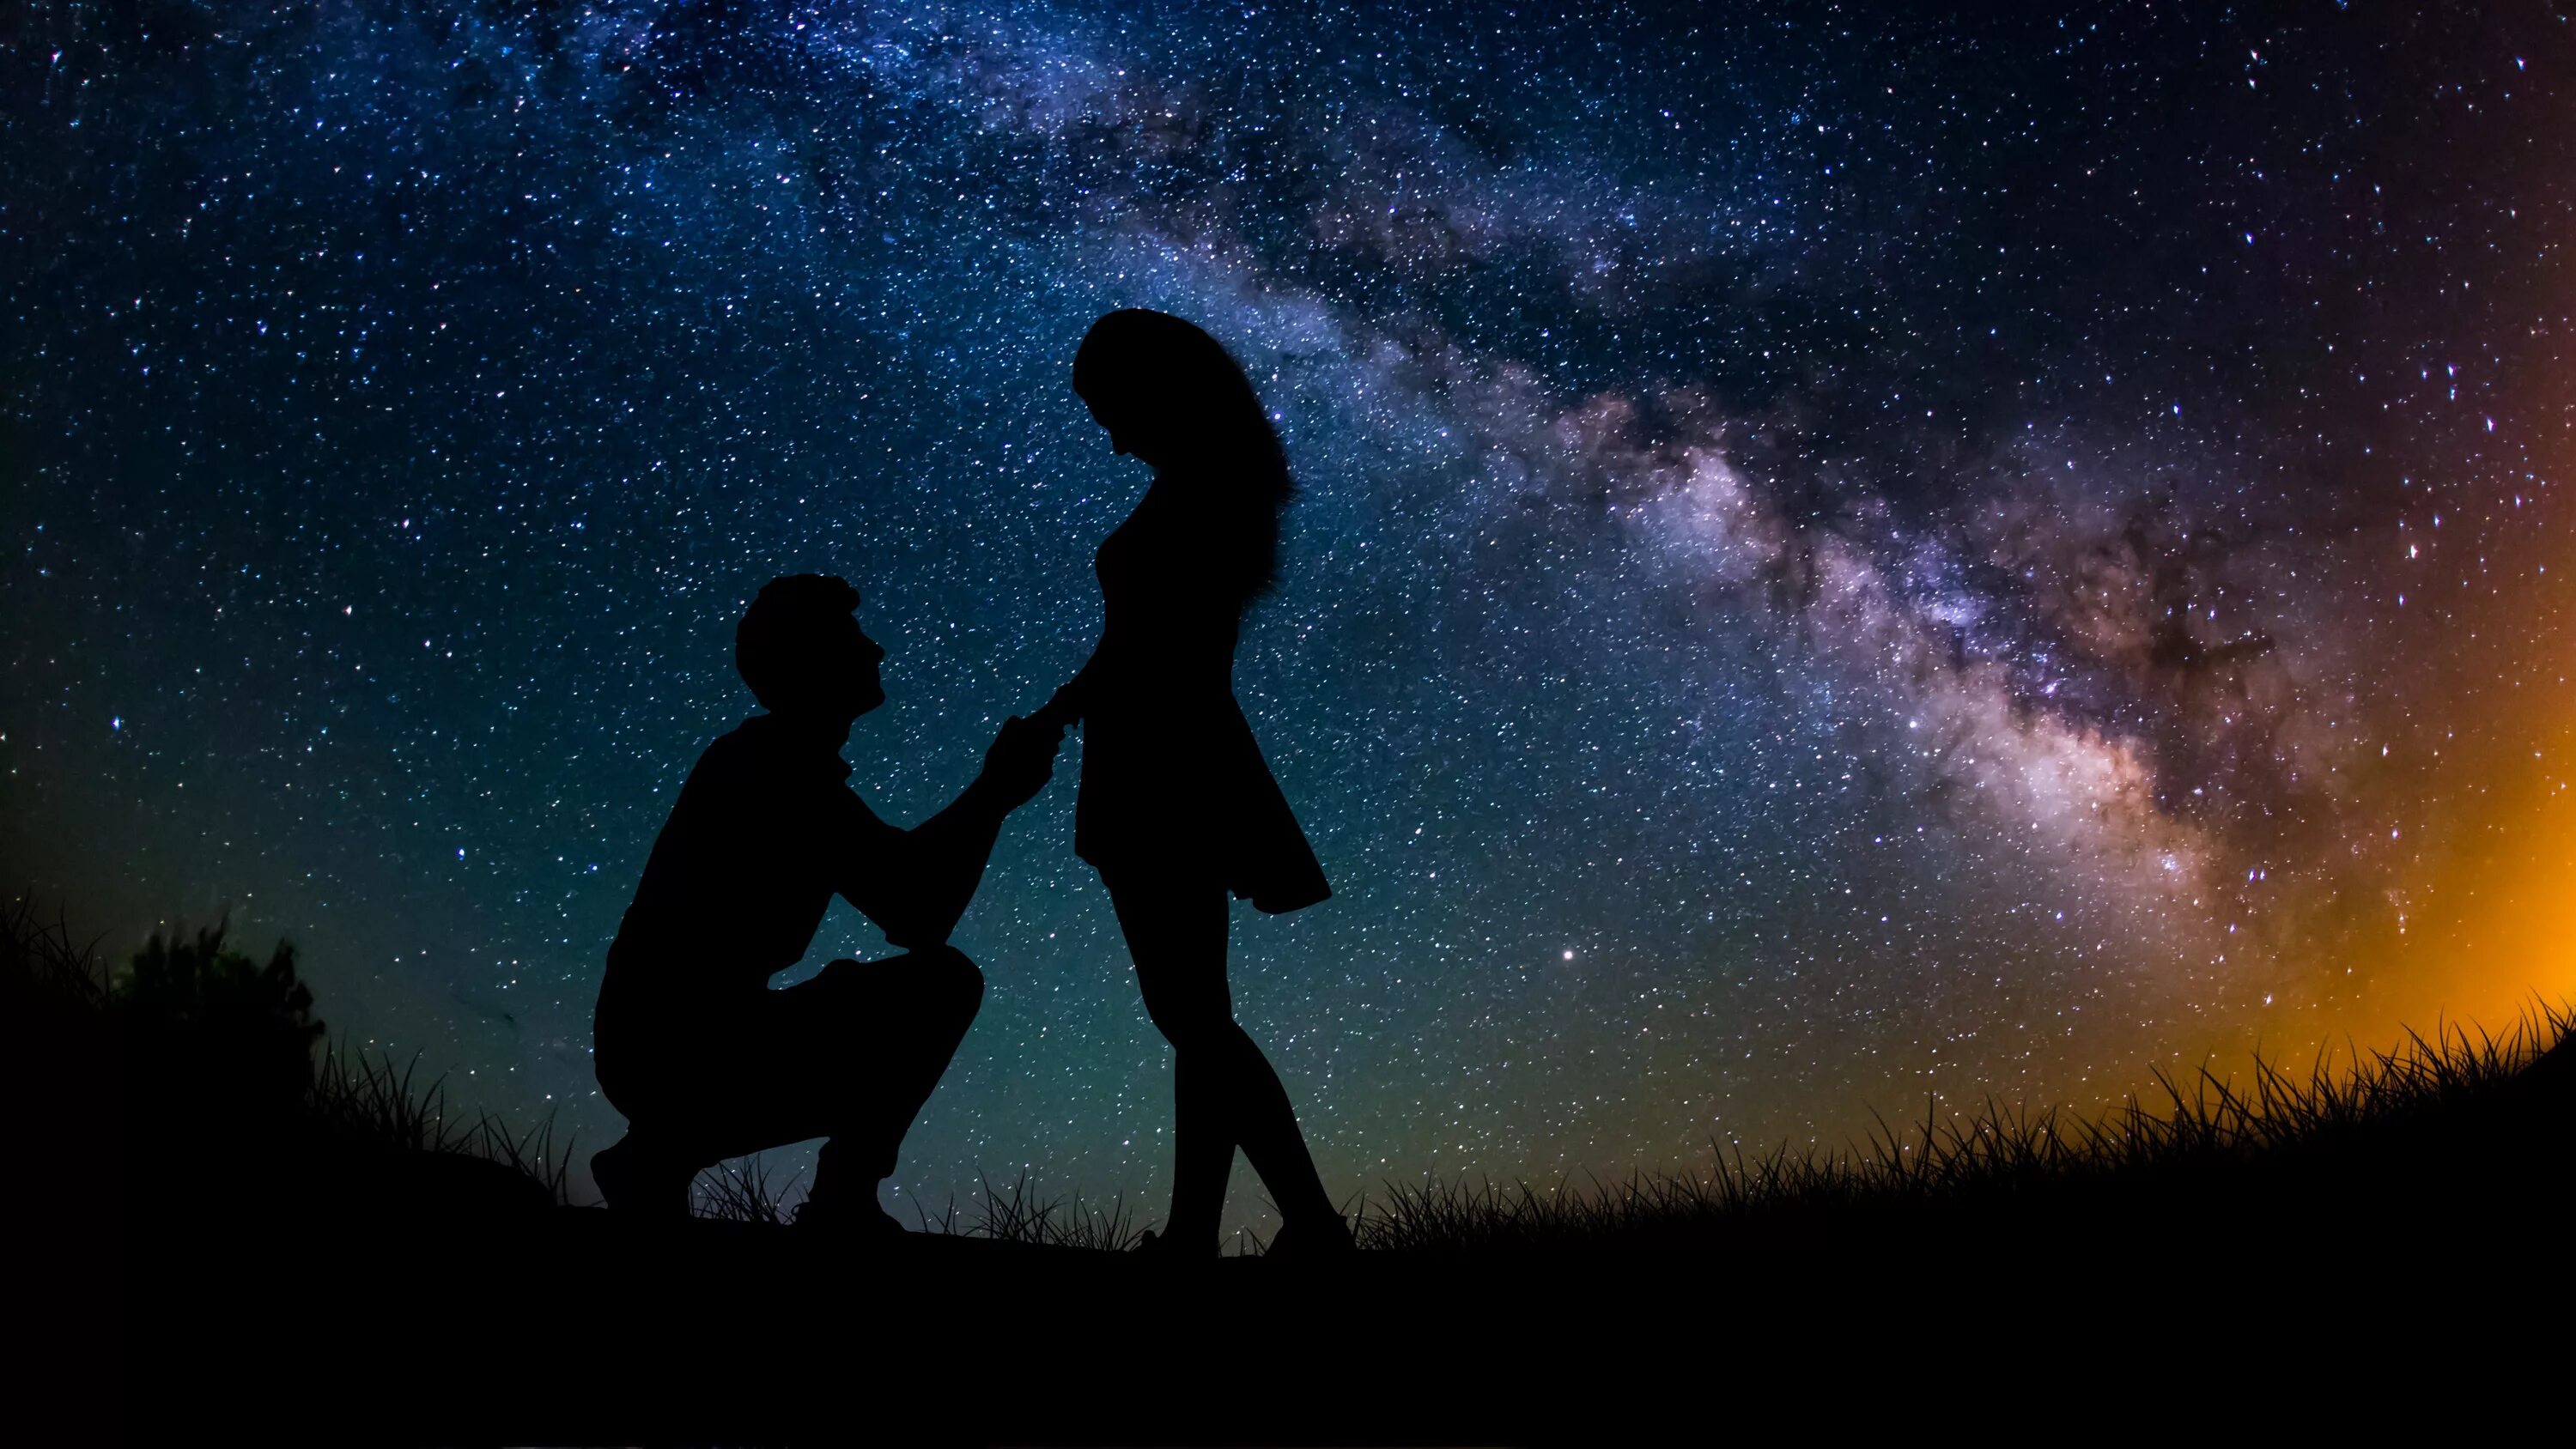 День и ночь встречаются. Пара на фоне звездного неба. Двое под звездами. Ночь любви. Пара на фоне ночного неба.